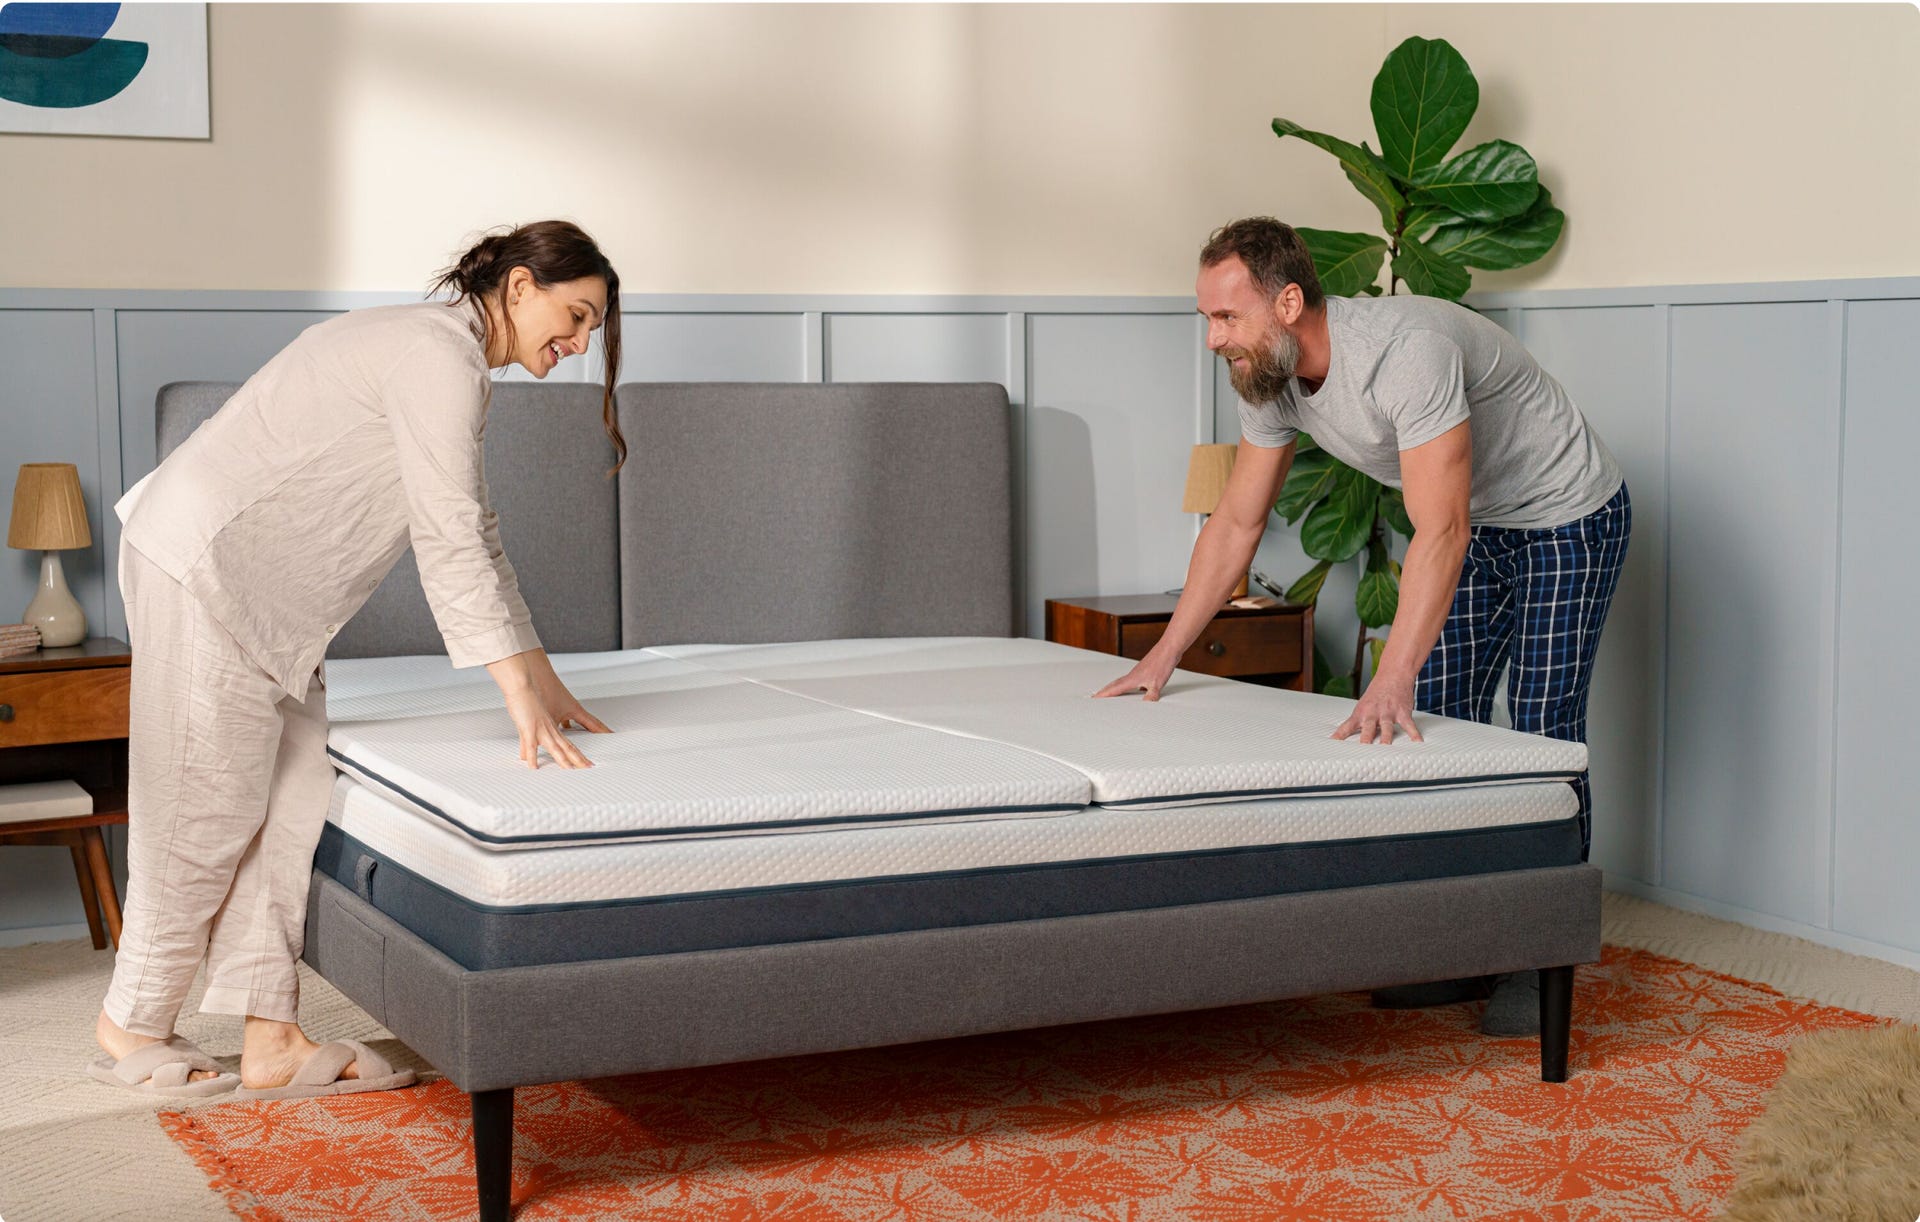 will a mattress topper extend life of mattress